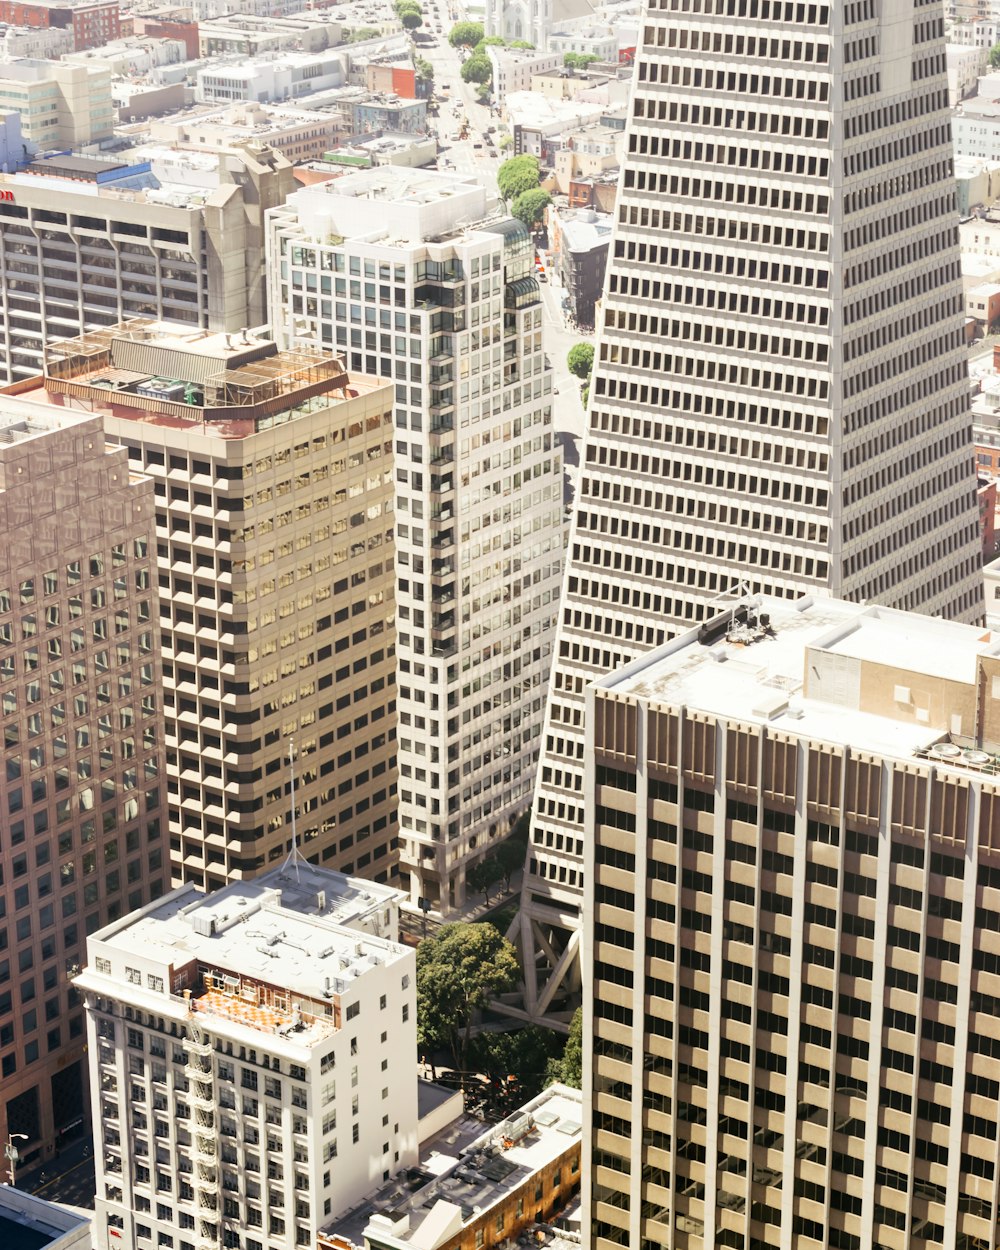 Fotografia aerea dell'edificio della città